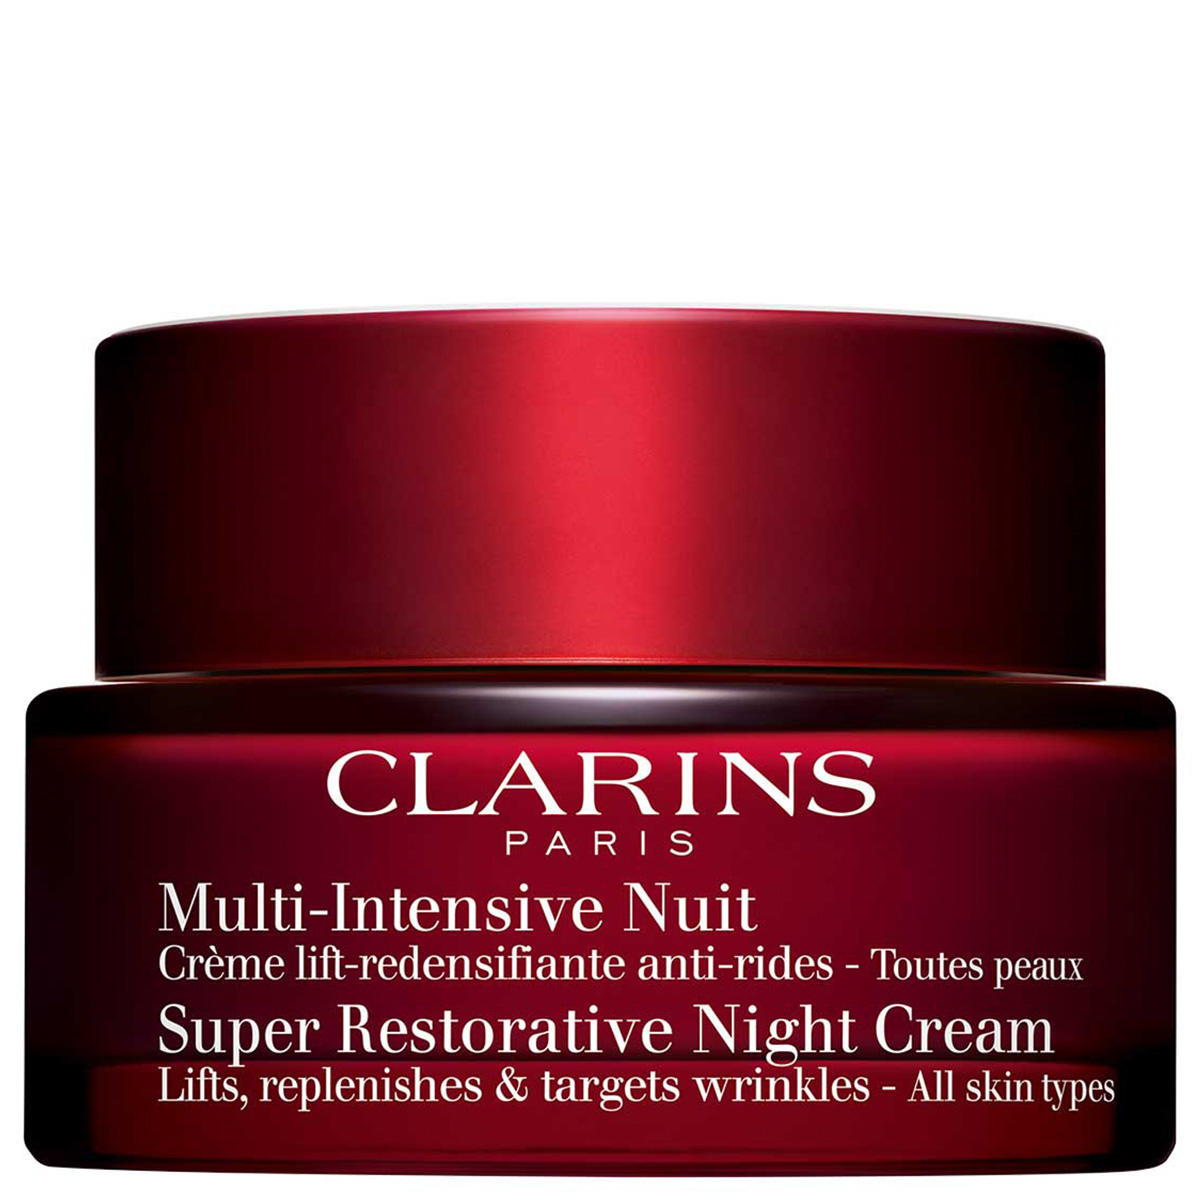 CLARINS Multi-Intensive Nuit Crème-Toutes peaux 50 ml - 1